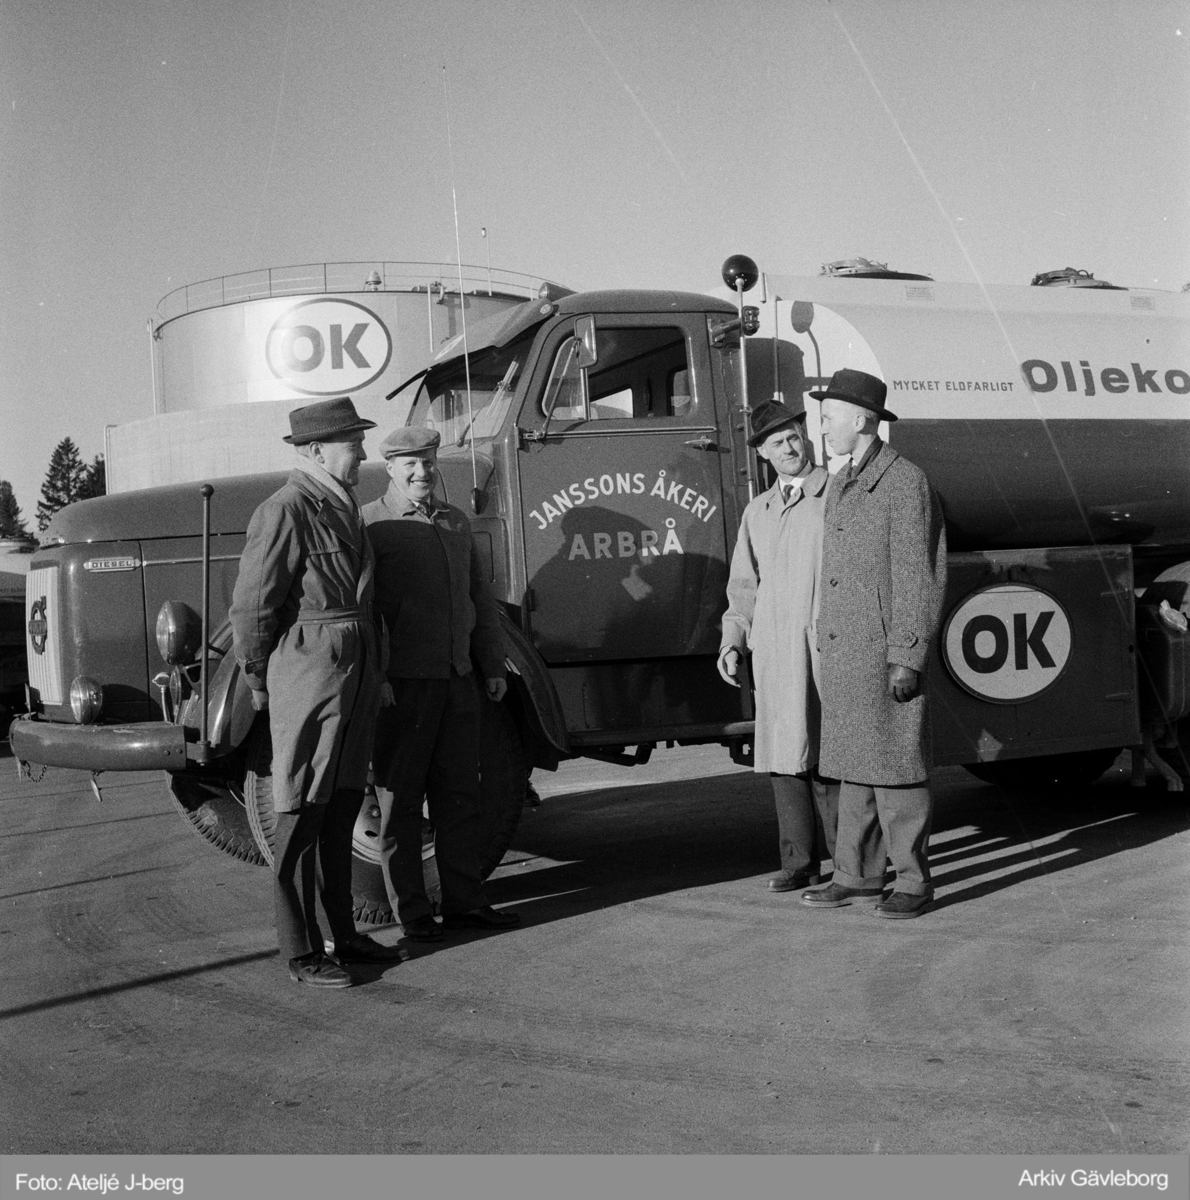 Janssons åkeri i Arbrå är tankbil för OK, 1960.